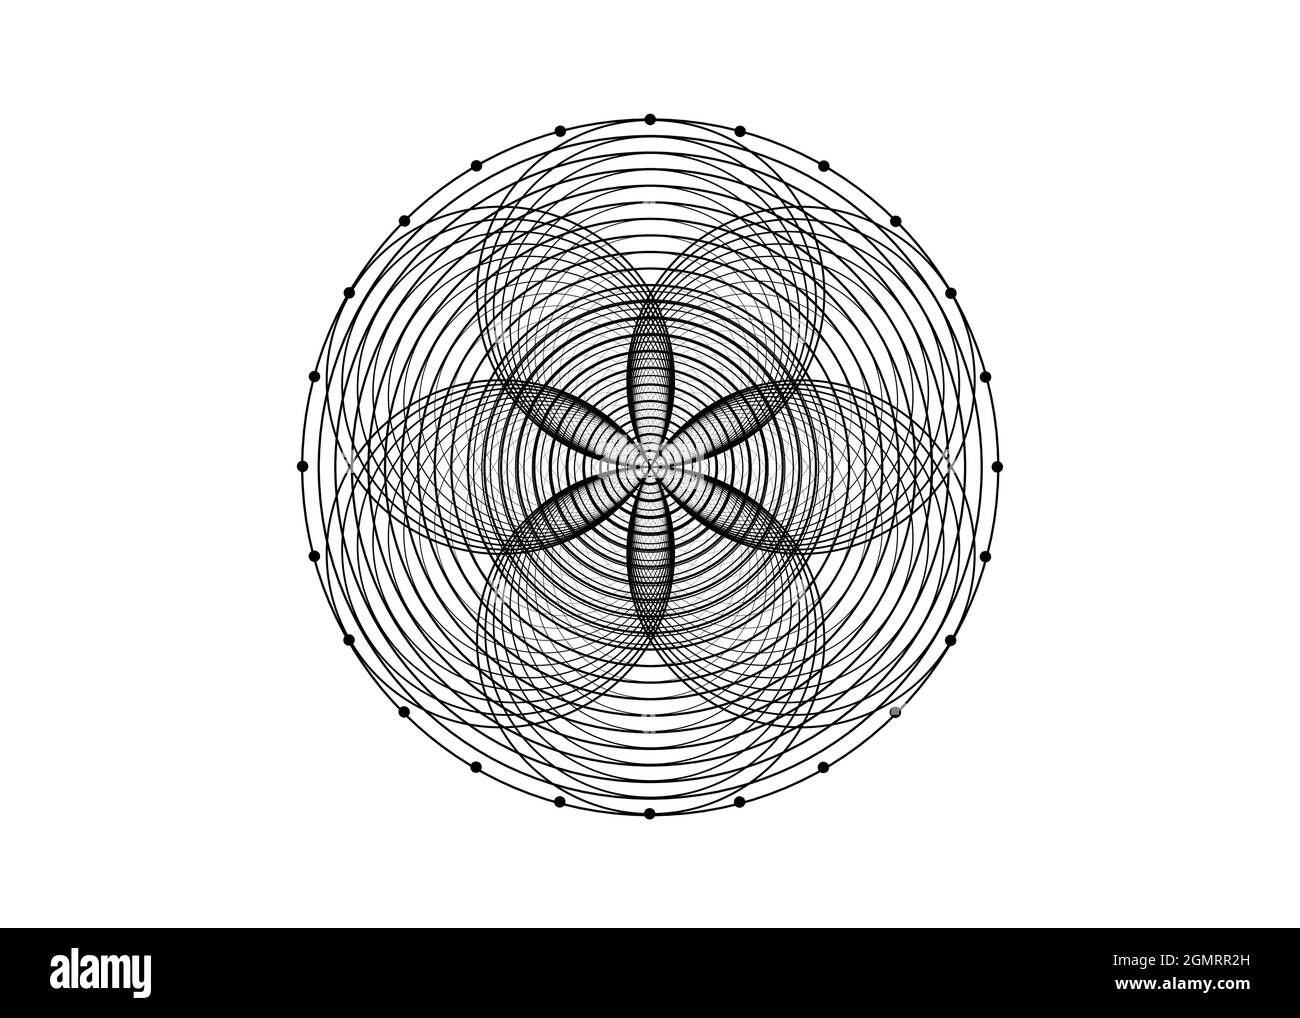 Symbole de la graine de vie géométrie sacrée. Logo icône Mandala mystique géométrique de la fleur ésotérique alchimie de la vie. Cercles noirs entrelacés, vecteur lotus Illustration de Vecteur